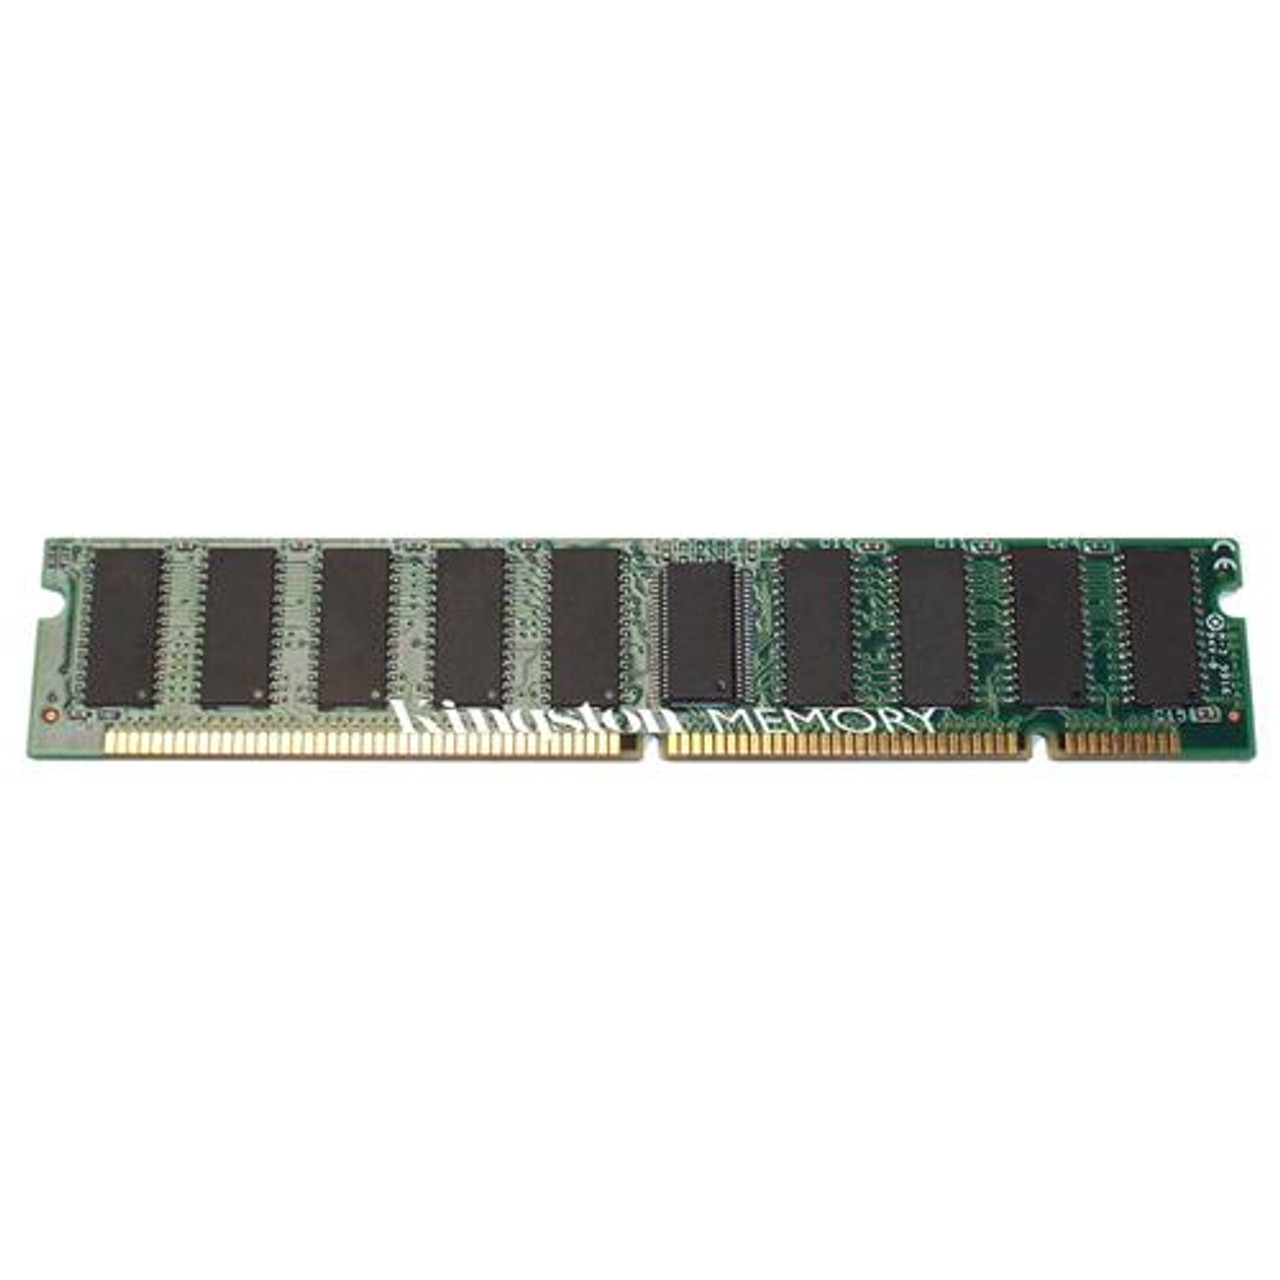 KTM00016/32 - Kingston 32MBSDRAM PC66 66MHz Non-ECC Unbuffered 3.3V 100-Pin DIMM Memory Module For Lexmark